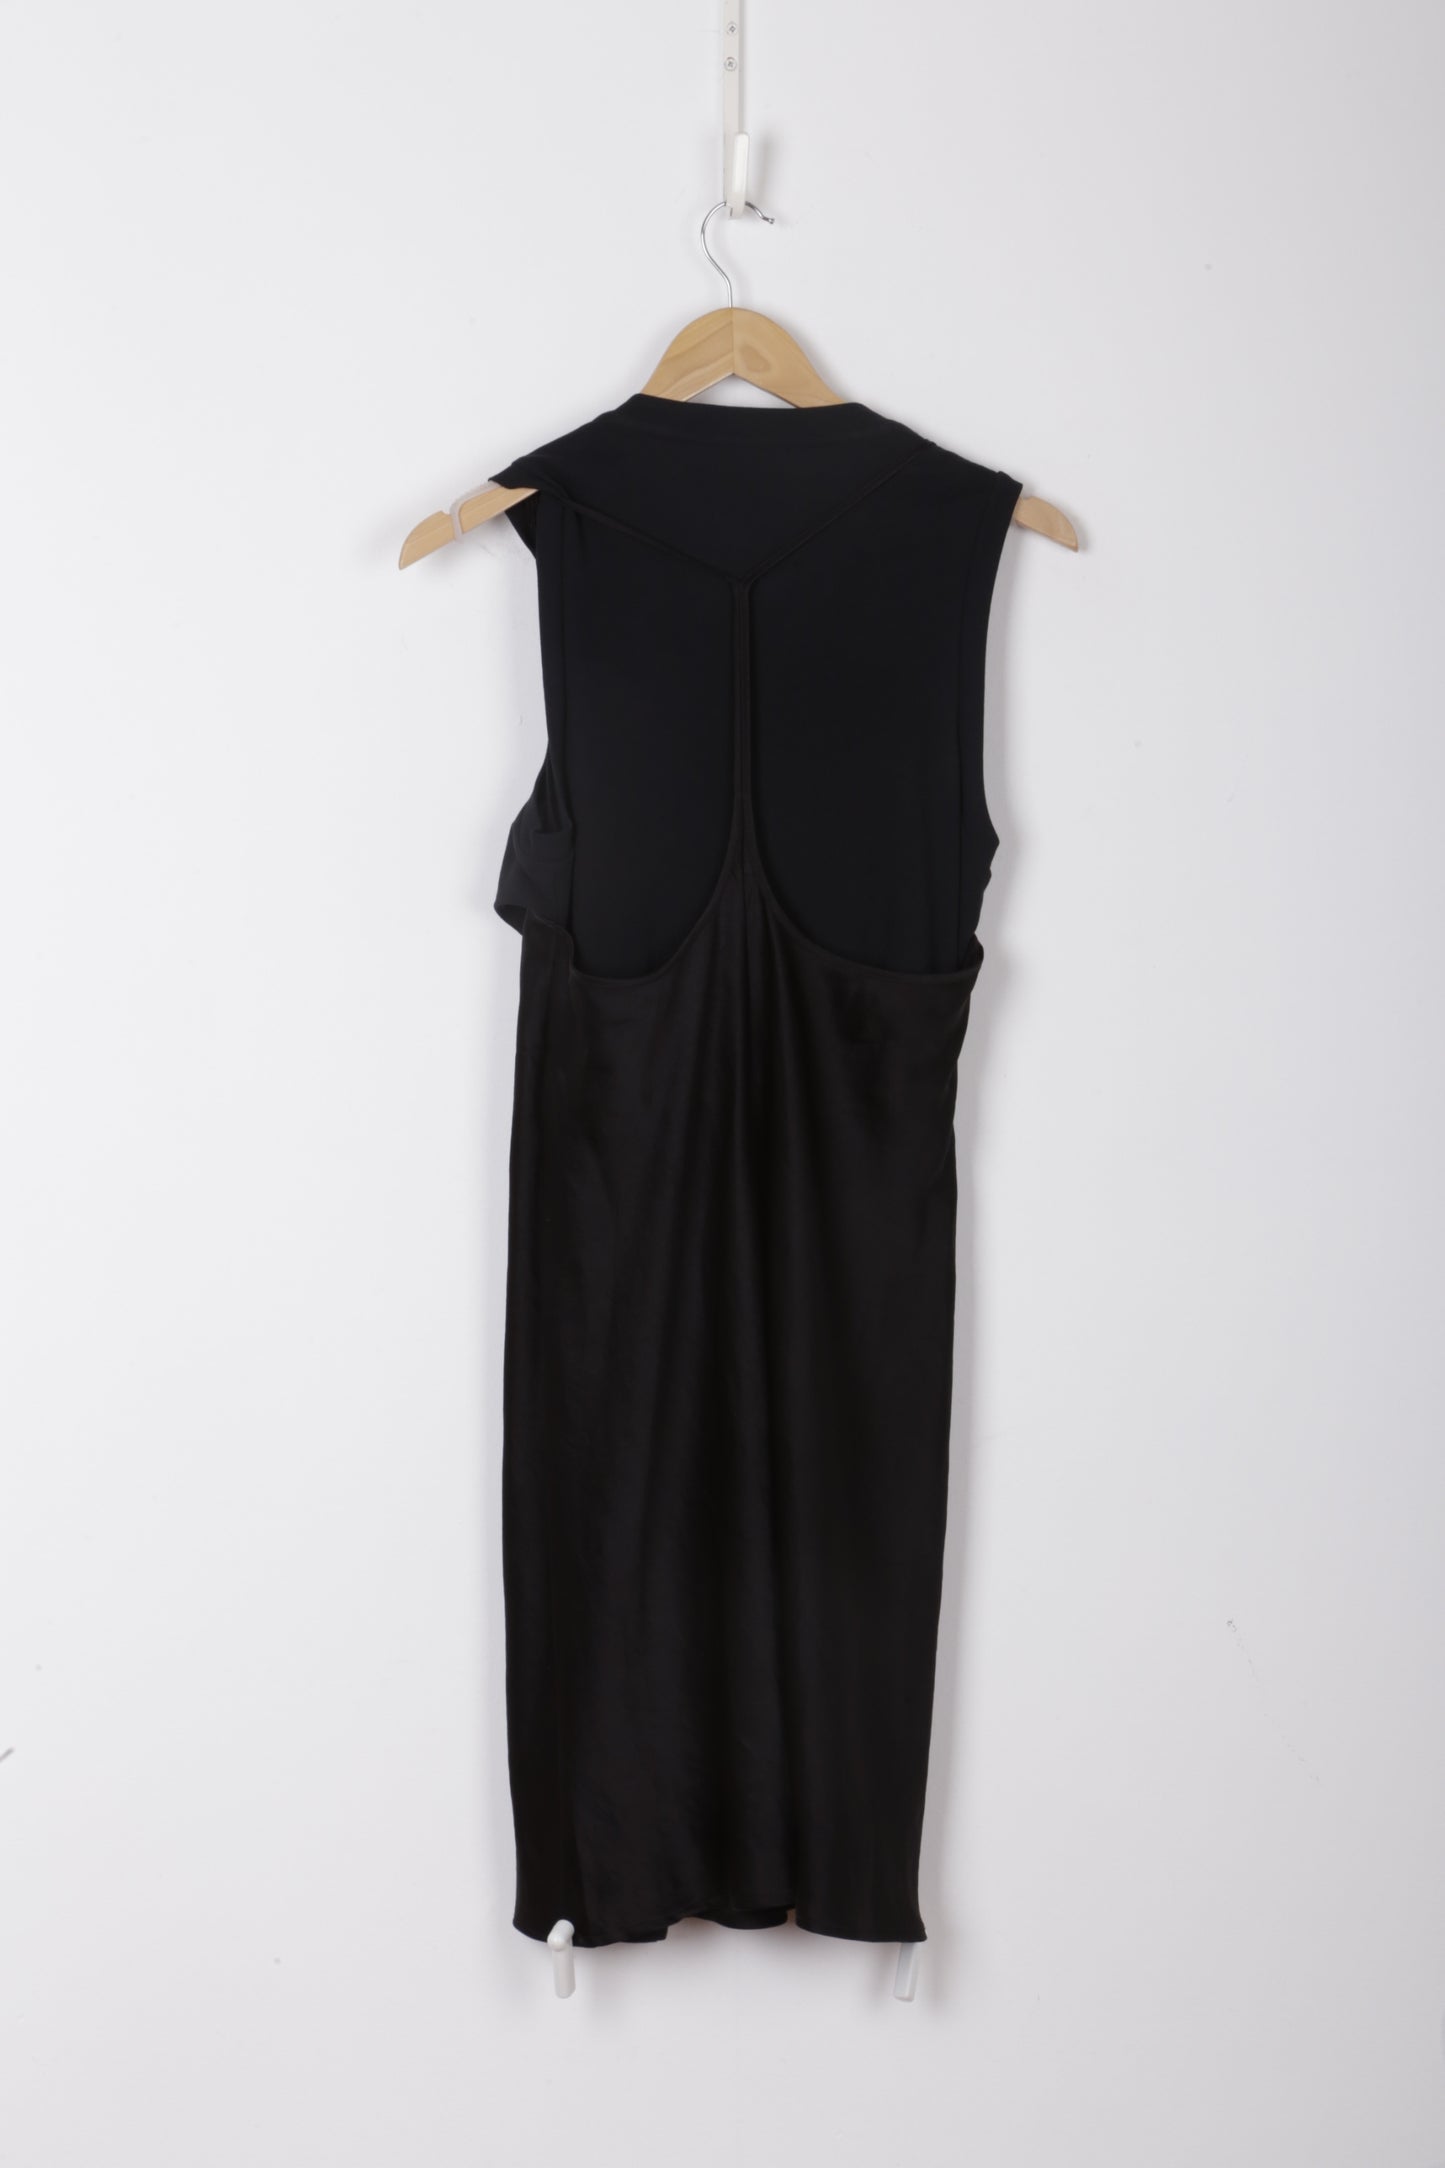 T Alexander Wang Womens Black Dress Size 8